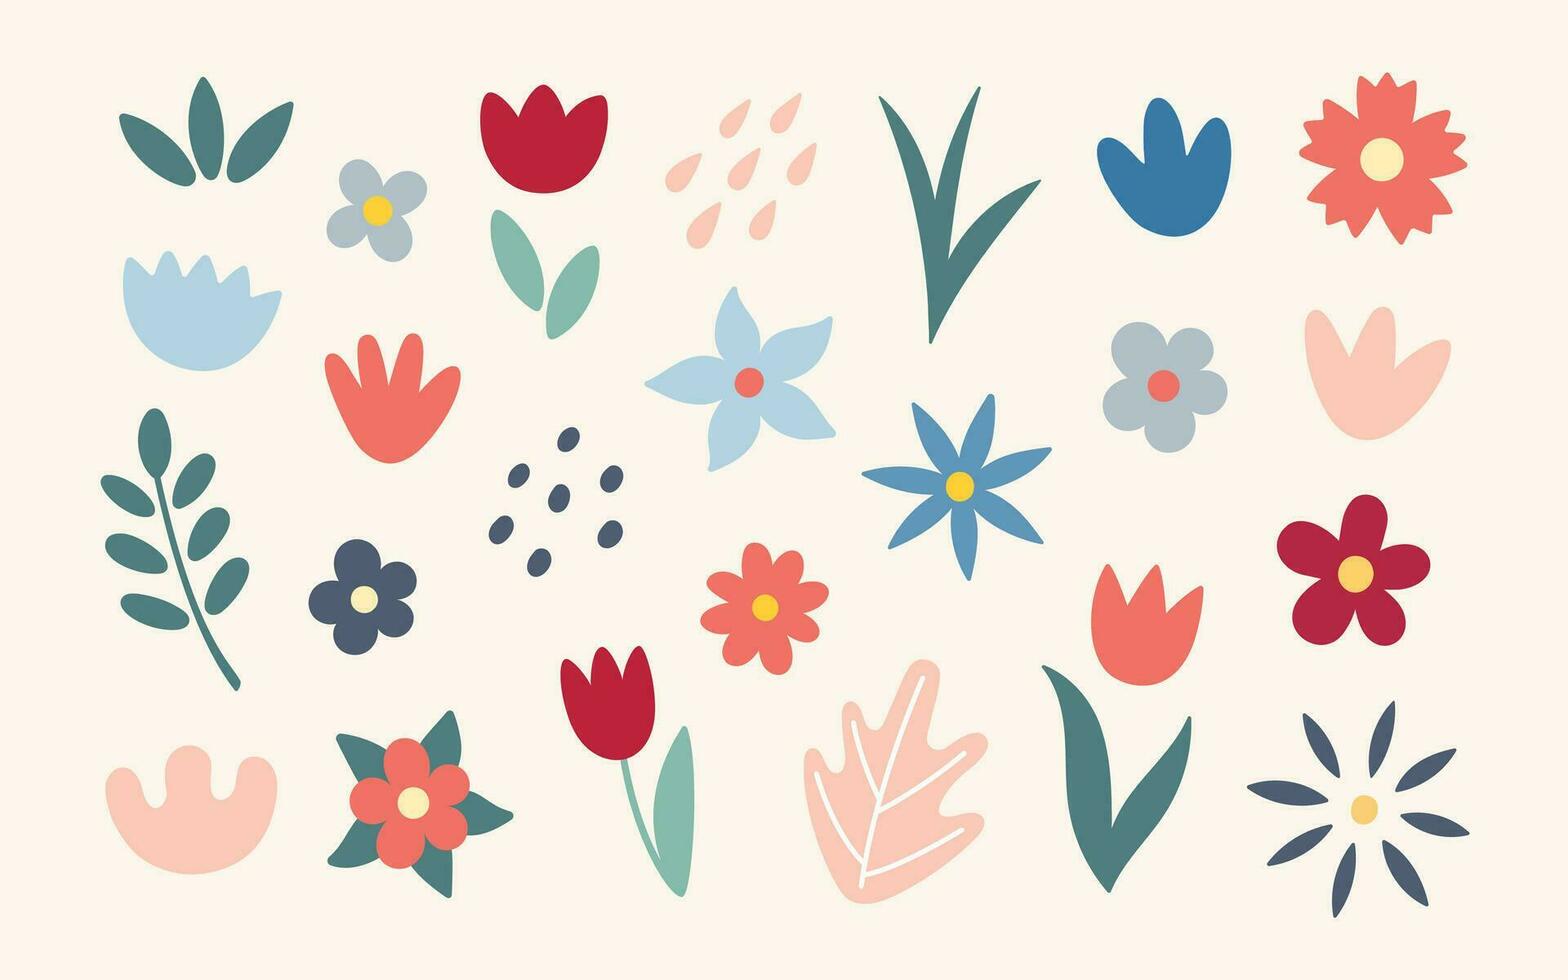 fiori e le foglie oggetti e forme. semplice astratto mano disegnato vario forme e scarabocchi. contemporaneo moderno di moda elementi. vettore botanico illustrazione.